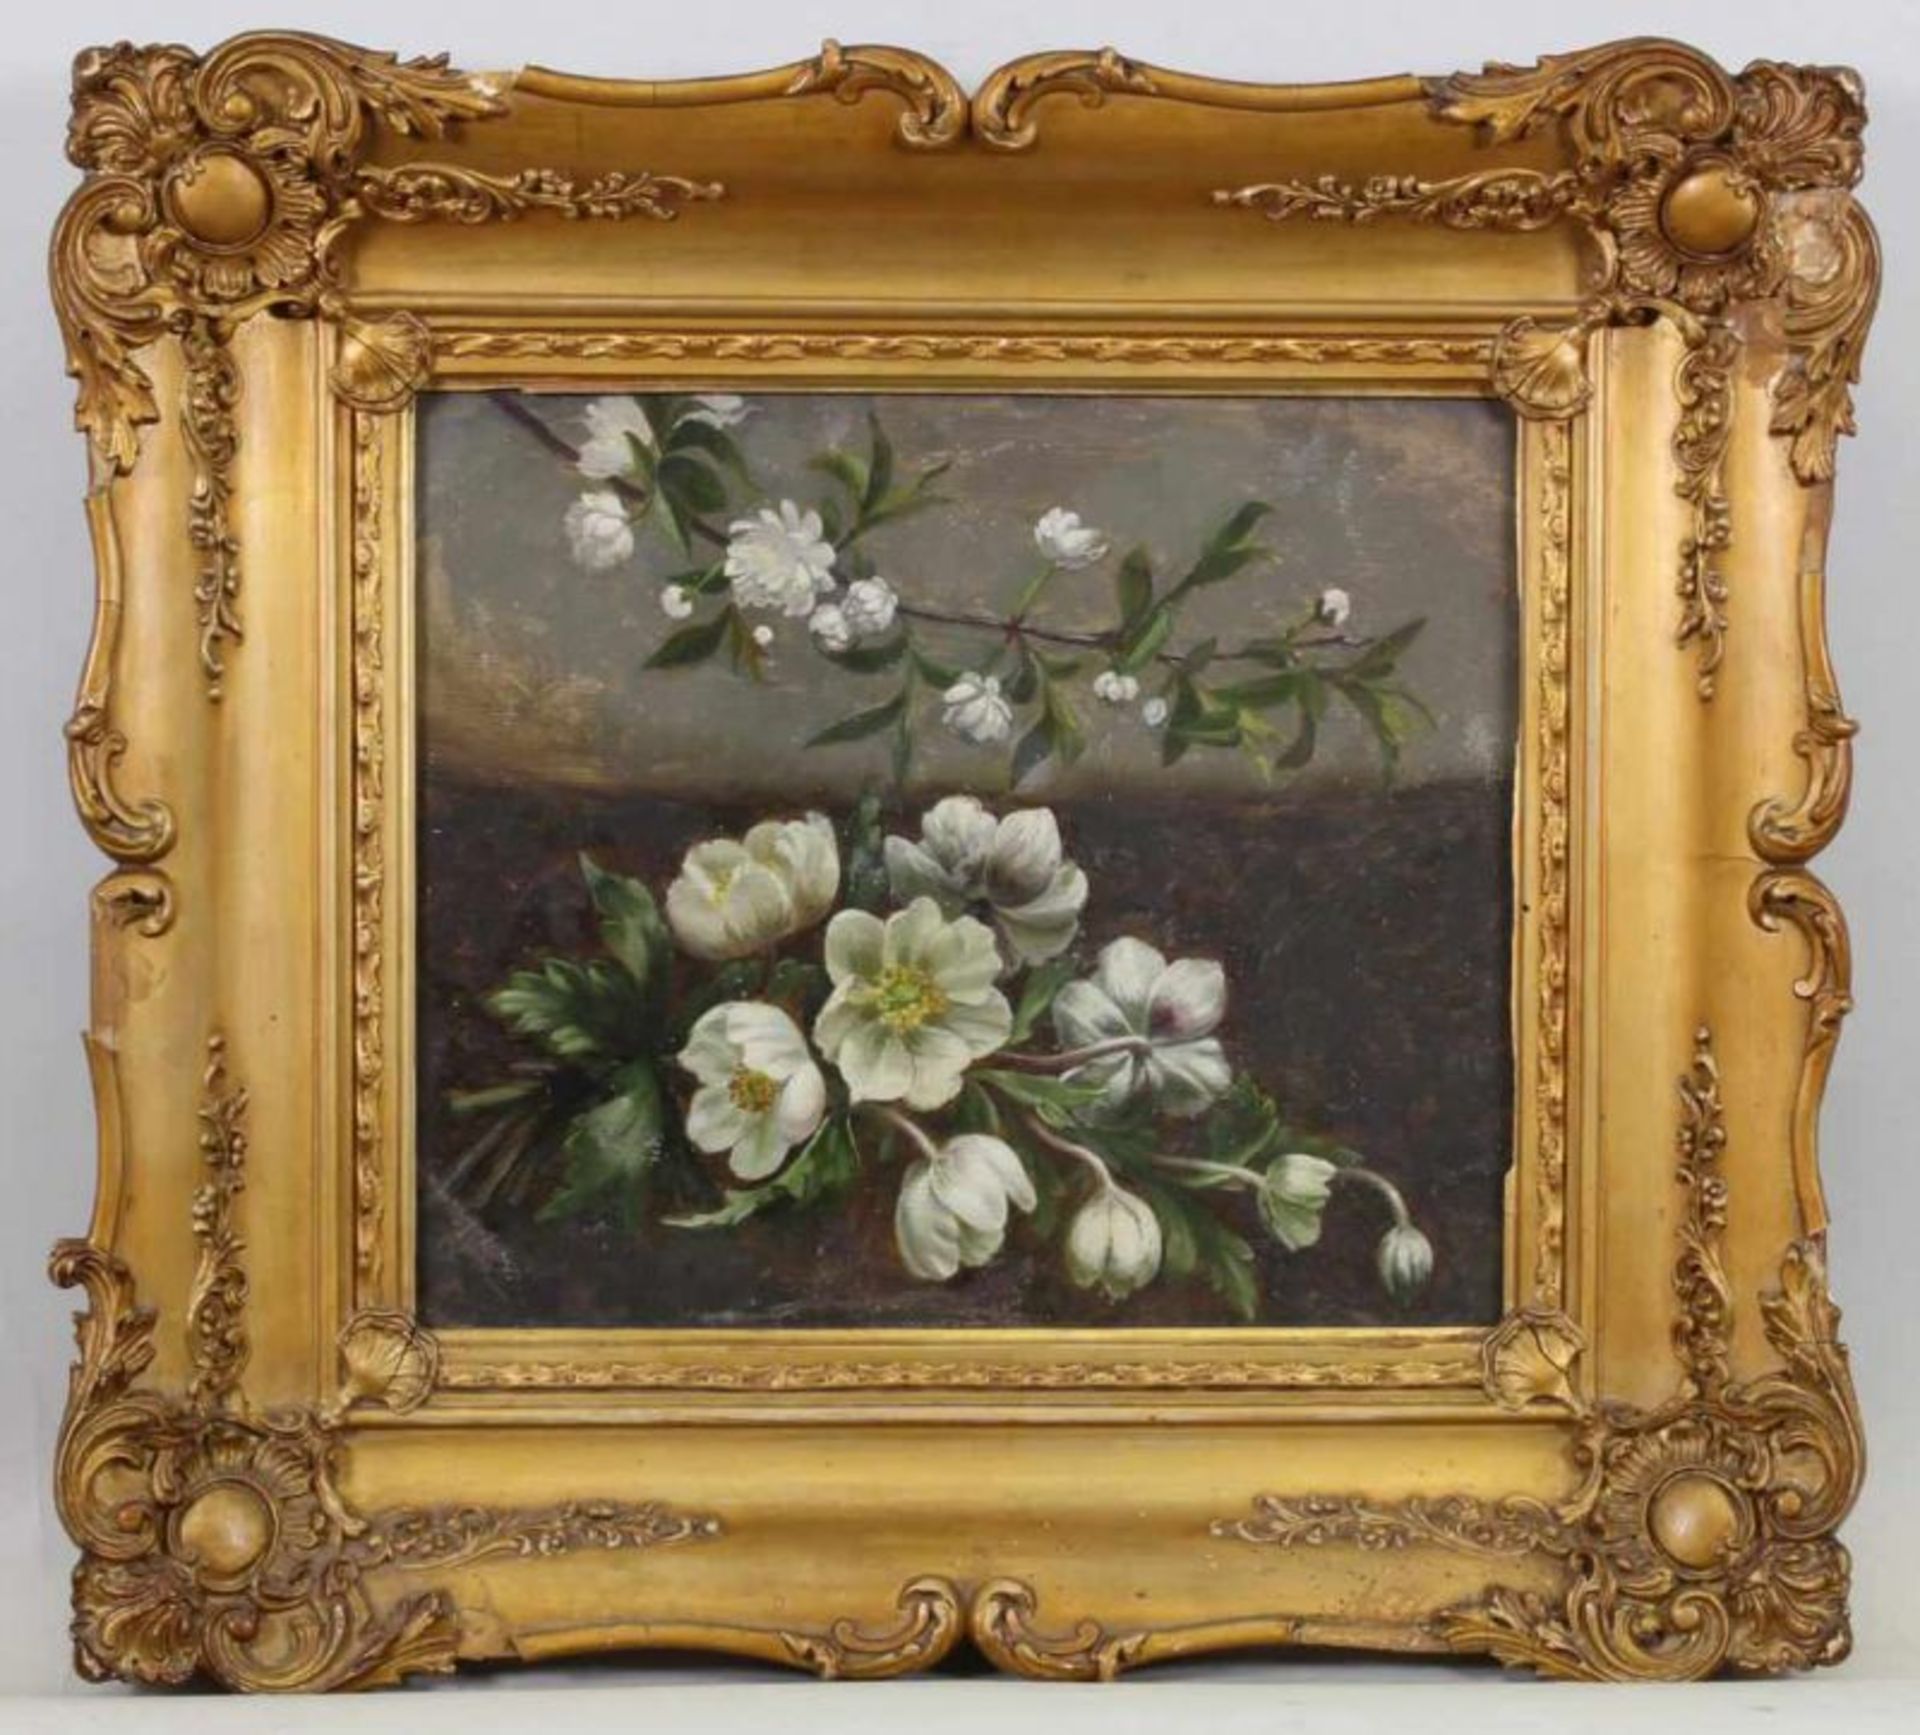 Deutscher Maler (2. Hälfte 19. Jh.,) "Stillleben mit Christrosen und Kirschblüten", Öl auf Leinwand, - Image 2 of 2